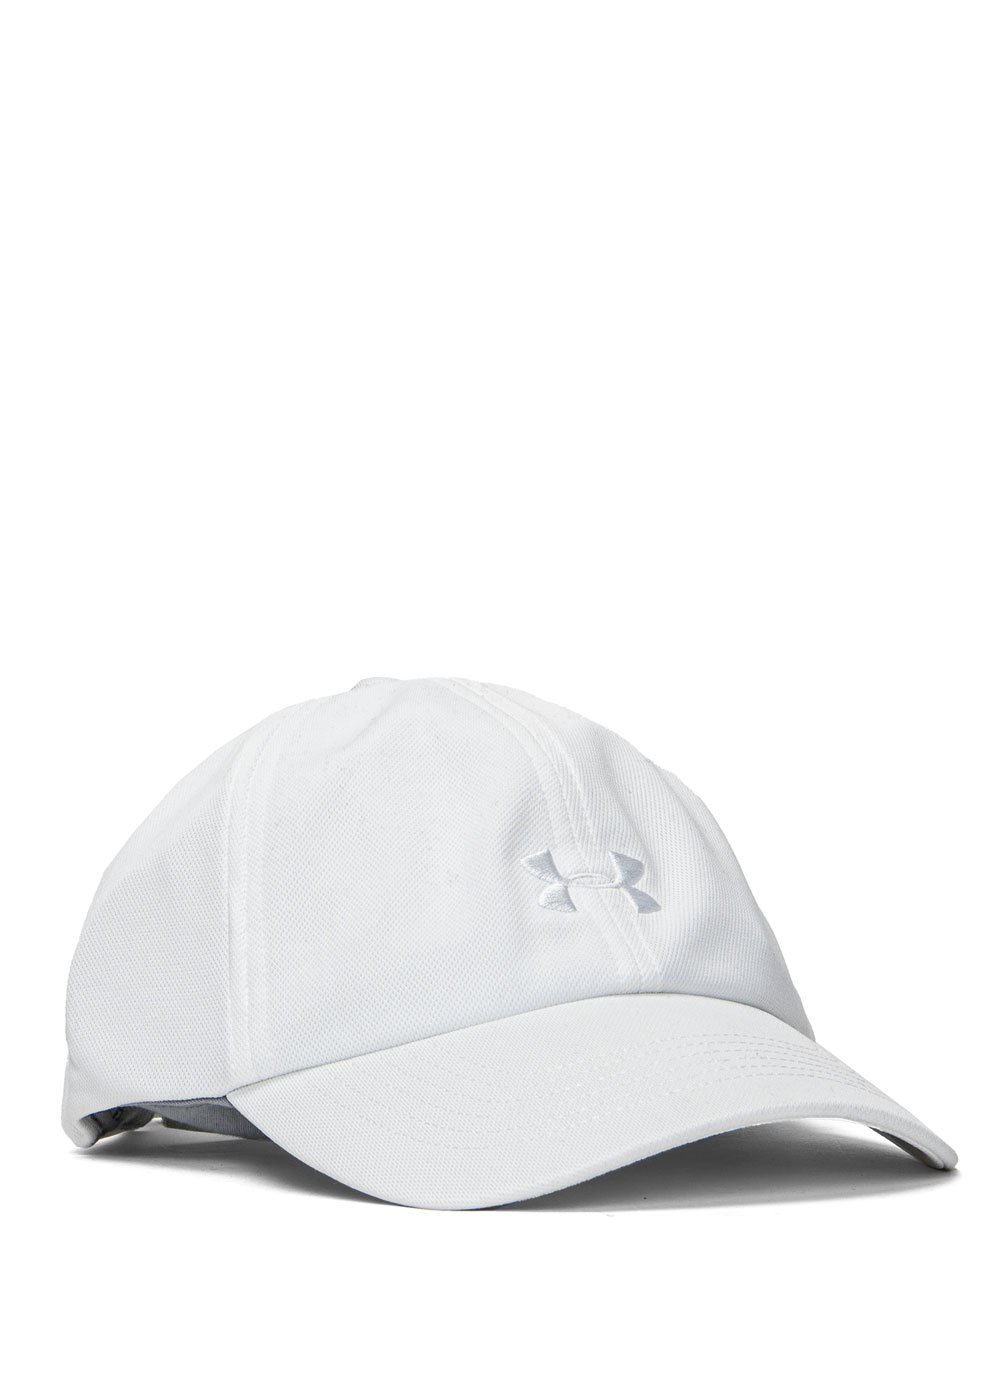 Baseballcap für Damen Weiß Under Armour Play Up Cap - 9,99 € - Sneaker  Peeker - Größte Rabatte! Schuhe, Bekleidung & Accessoires | Street,  Trekking, Sport, Lifestyle